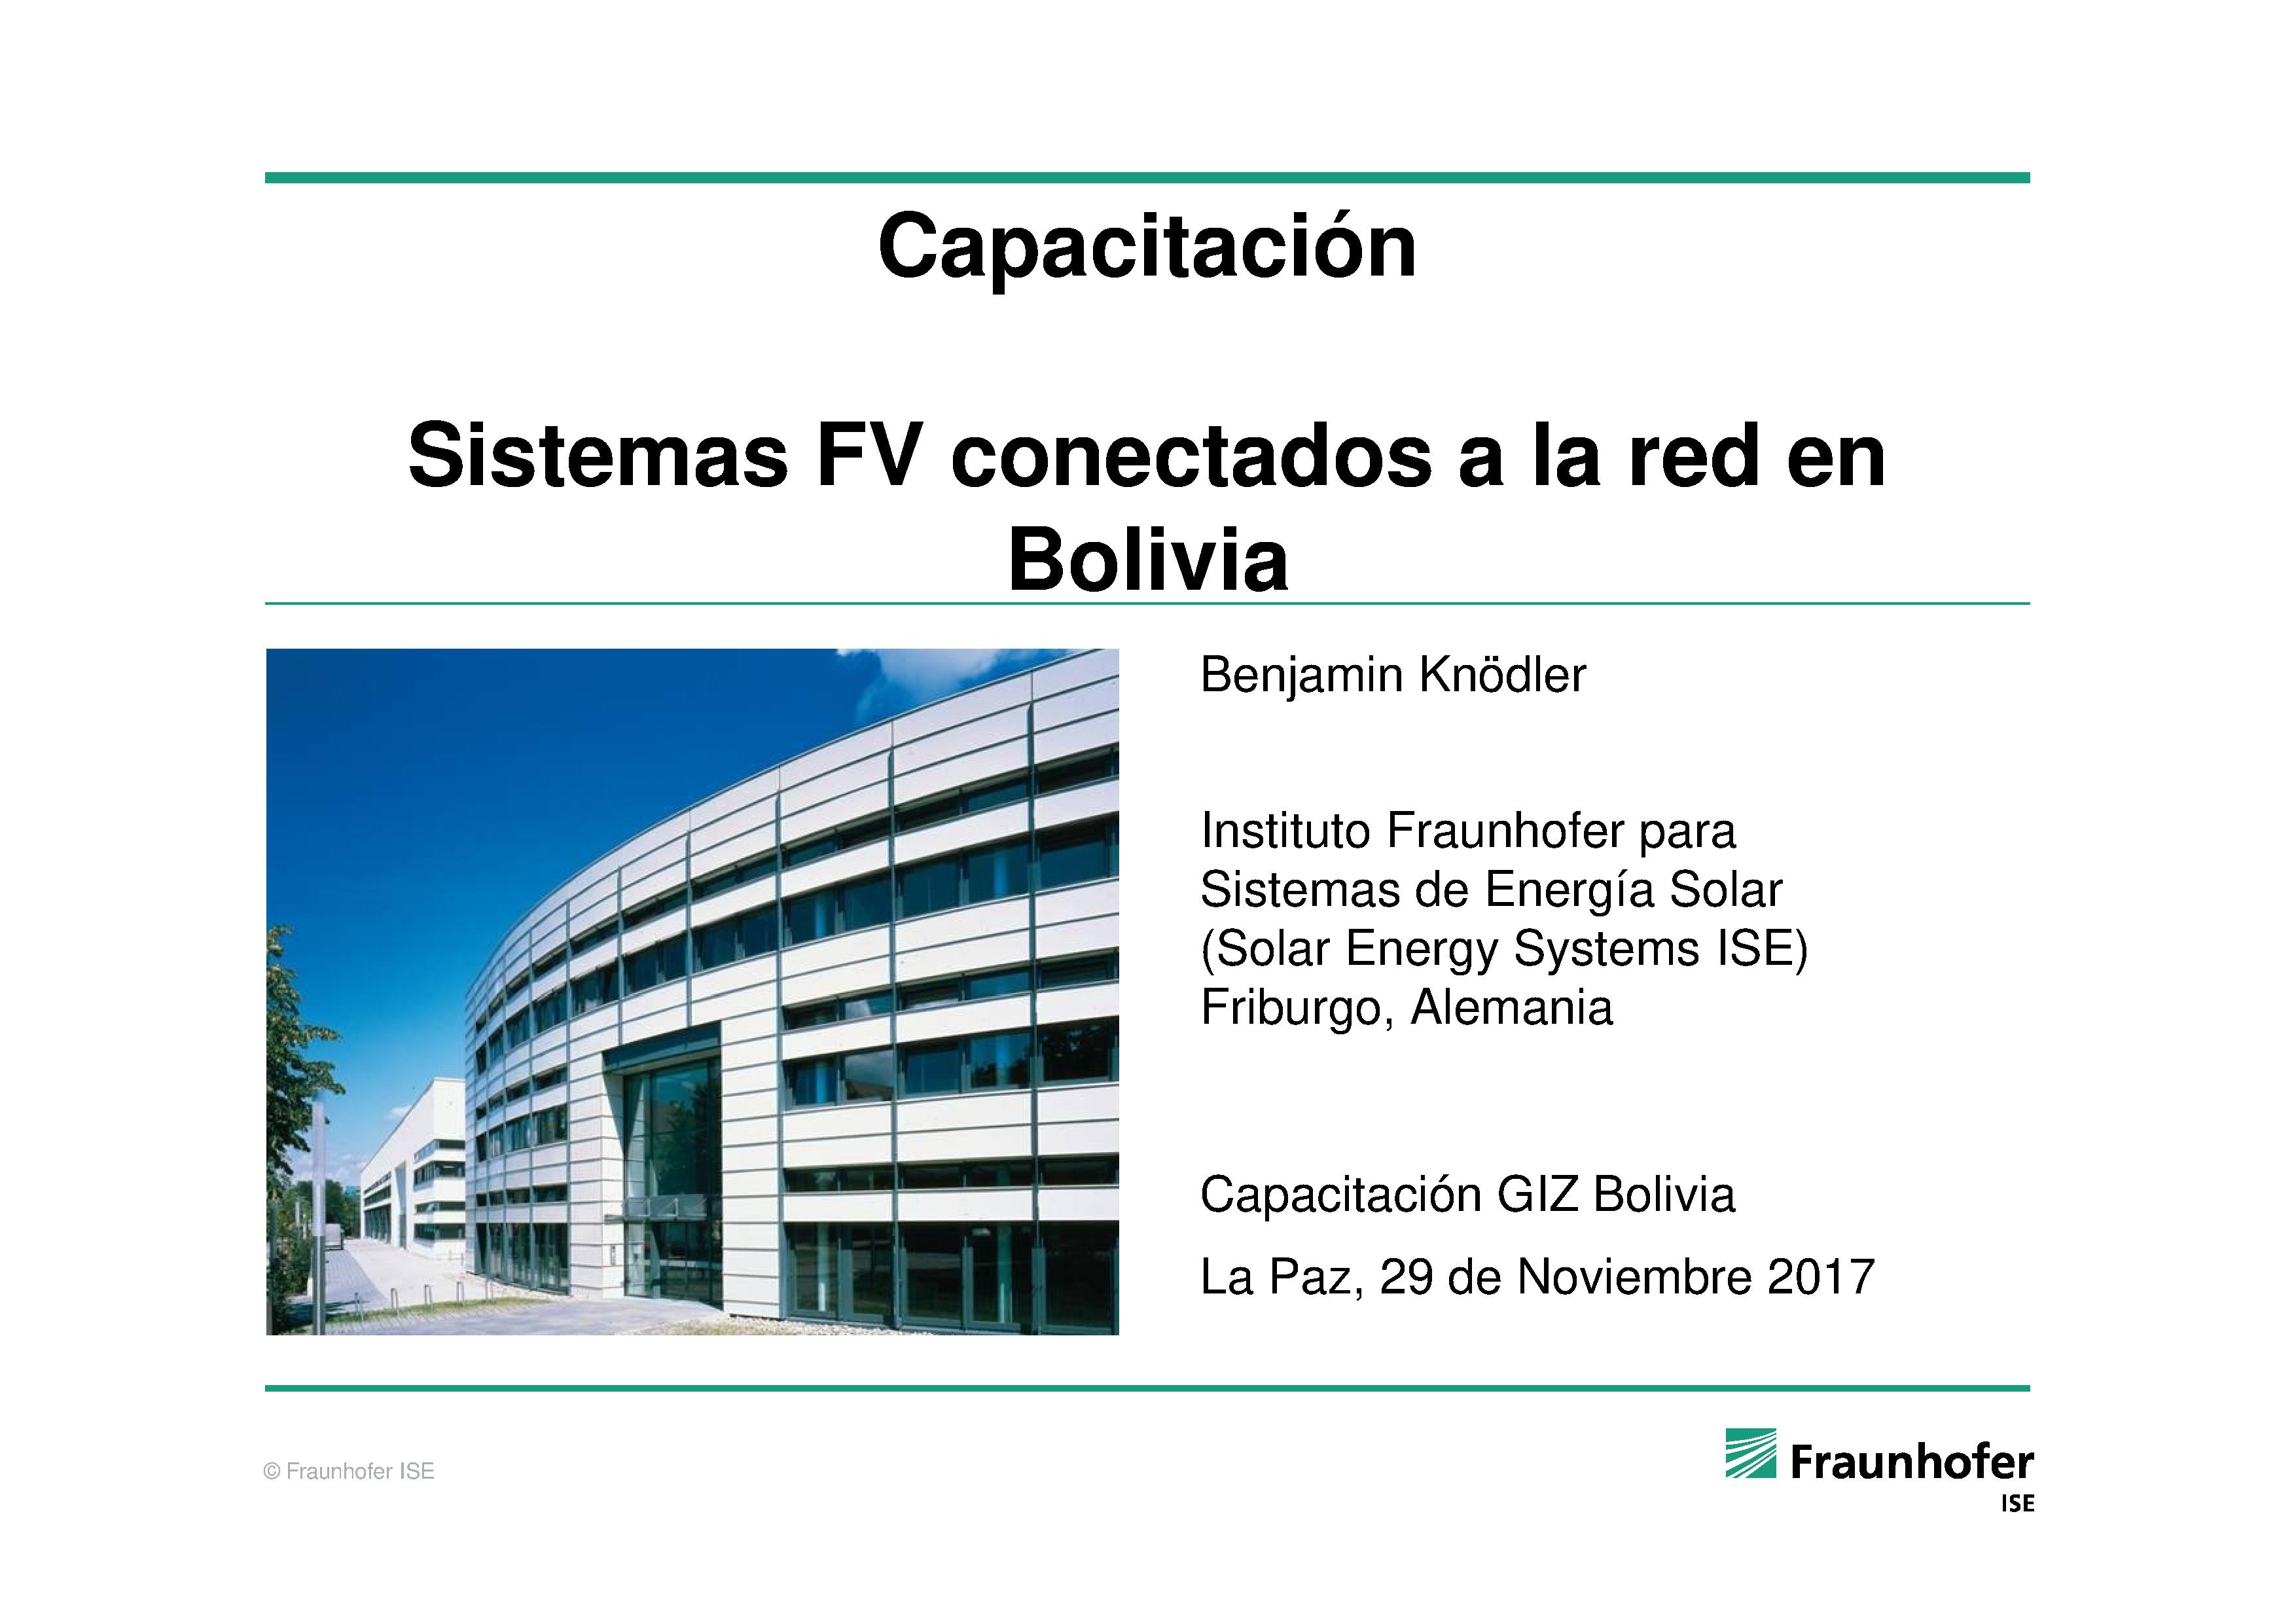 • Sistemas FV conectados a la red en Bolivia (Benjamin Knödler)